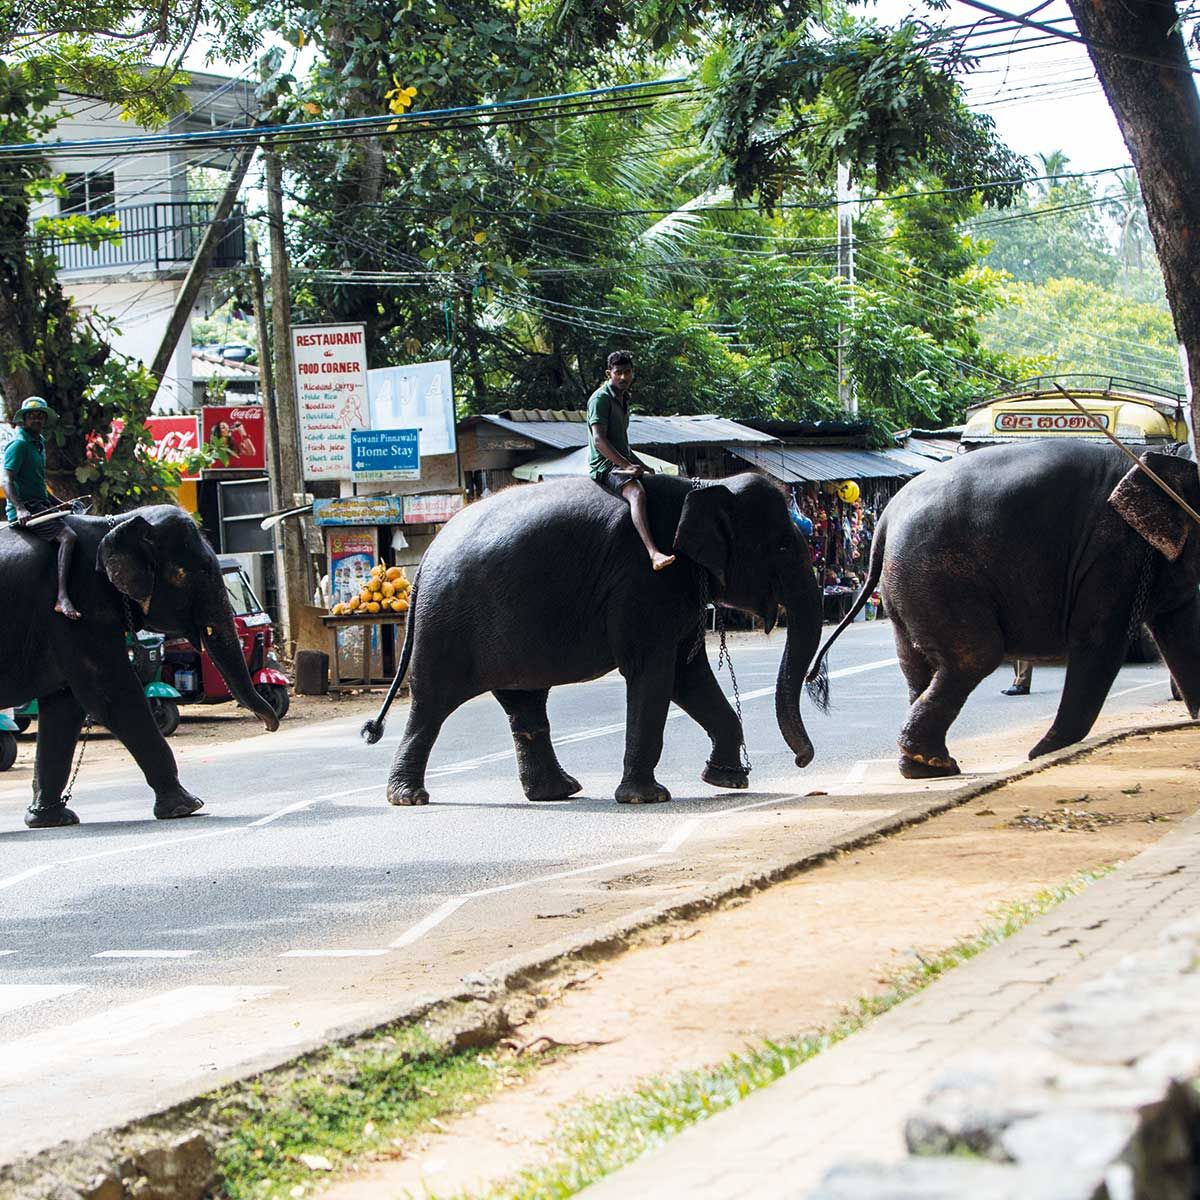 Bild: Elefanten kreuzen Straße in Indien